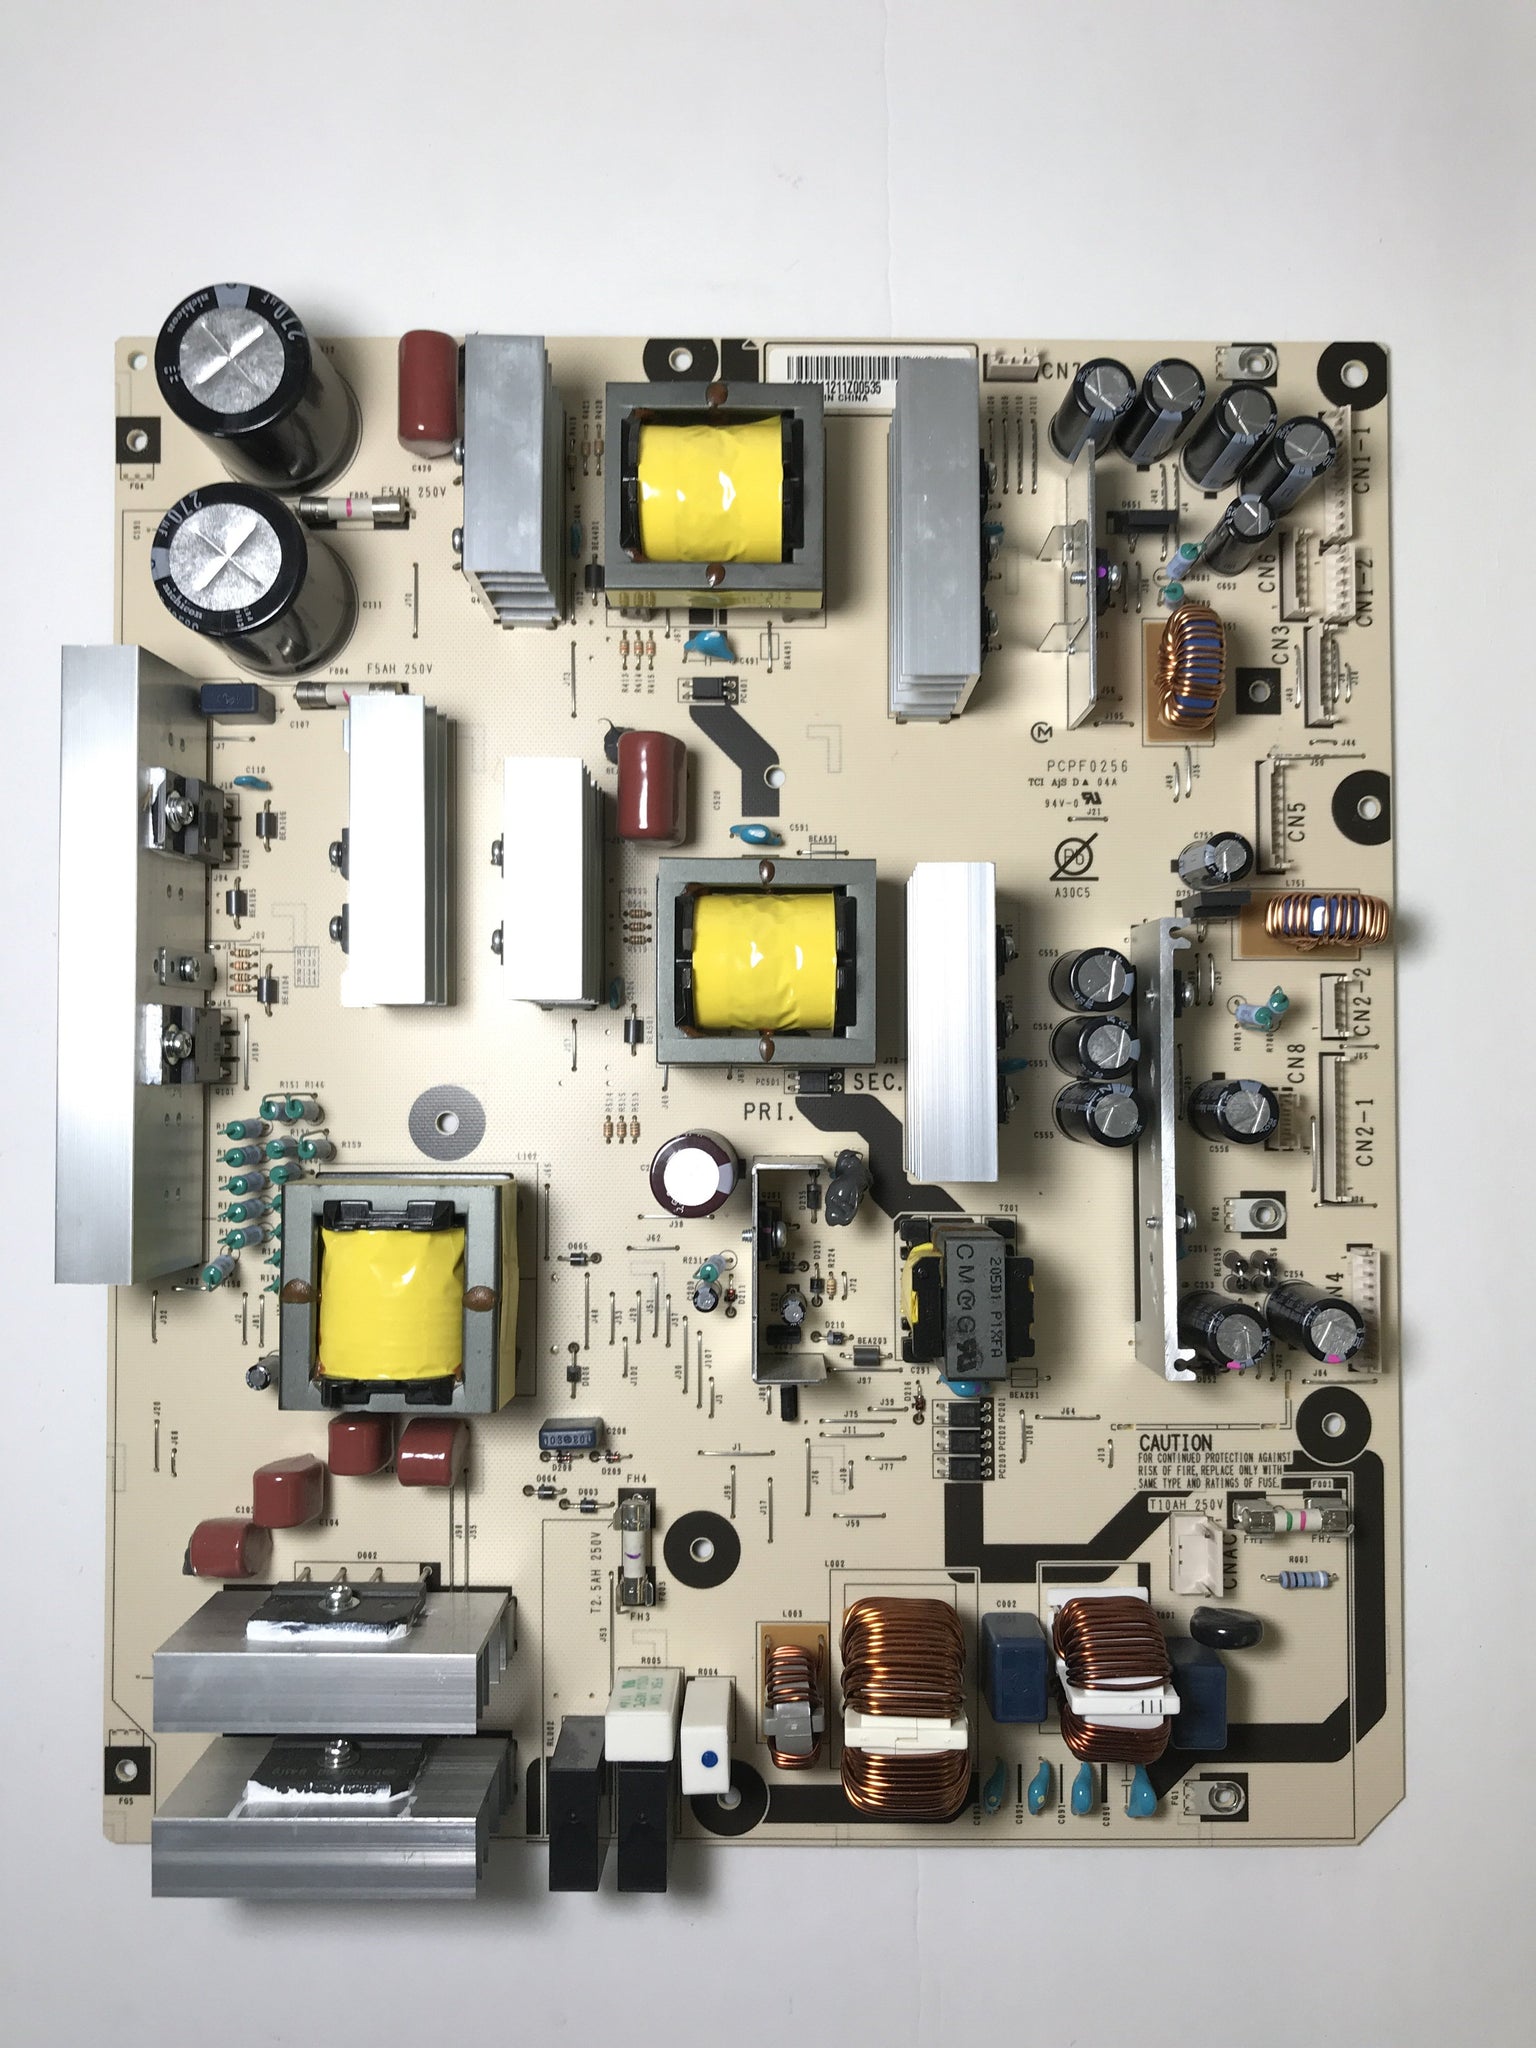 NEC MPF2933L (PCPF0256) Power Supply for P551 L559NL